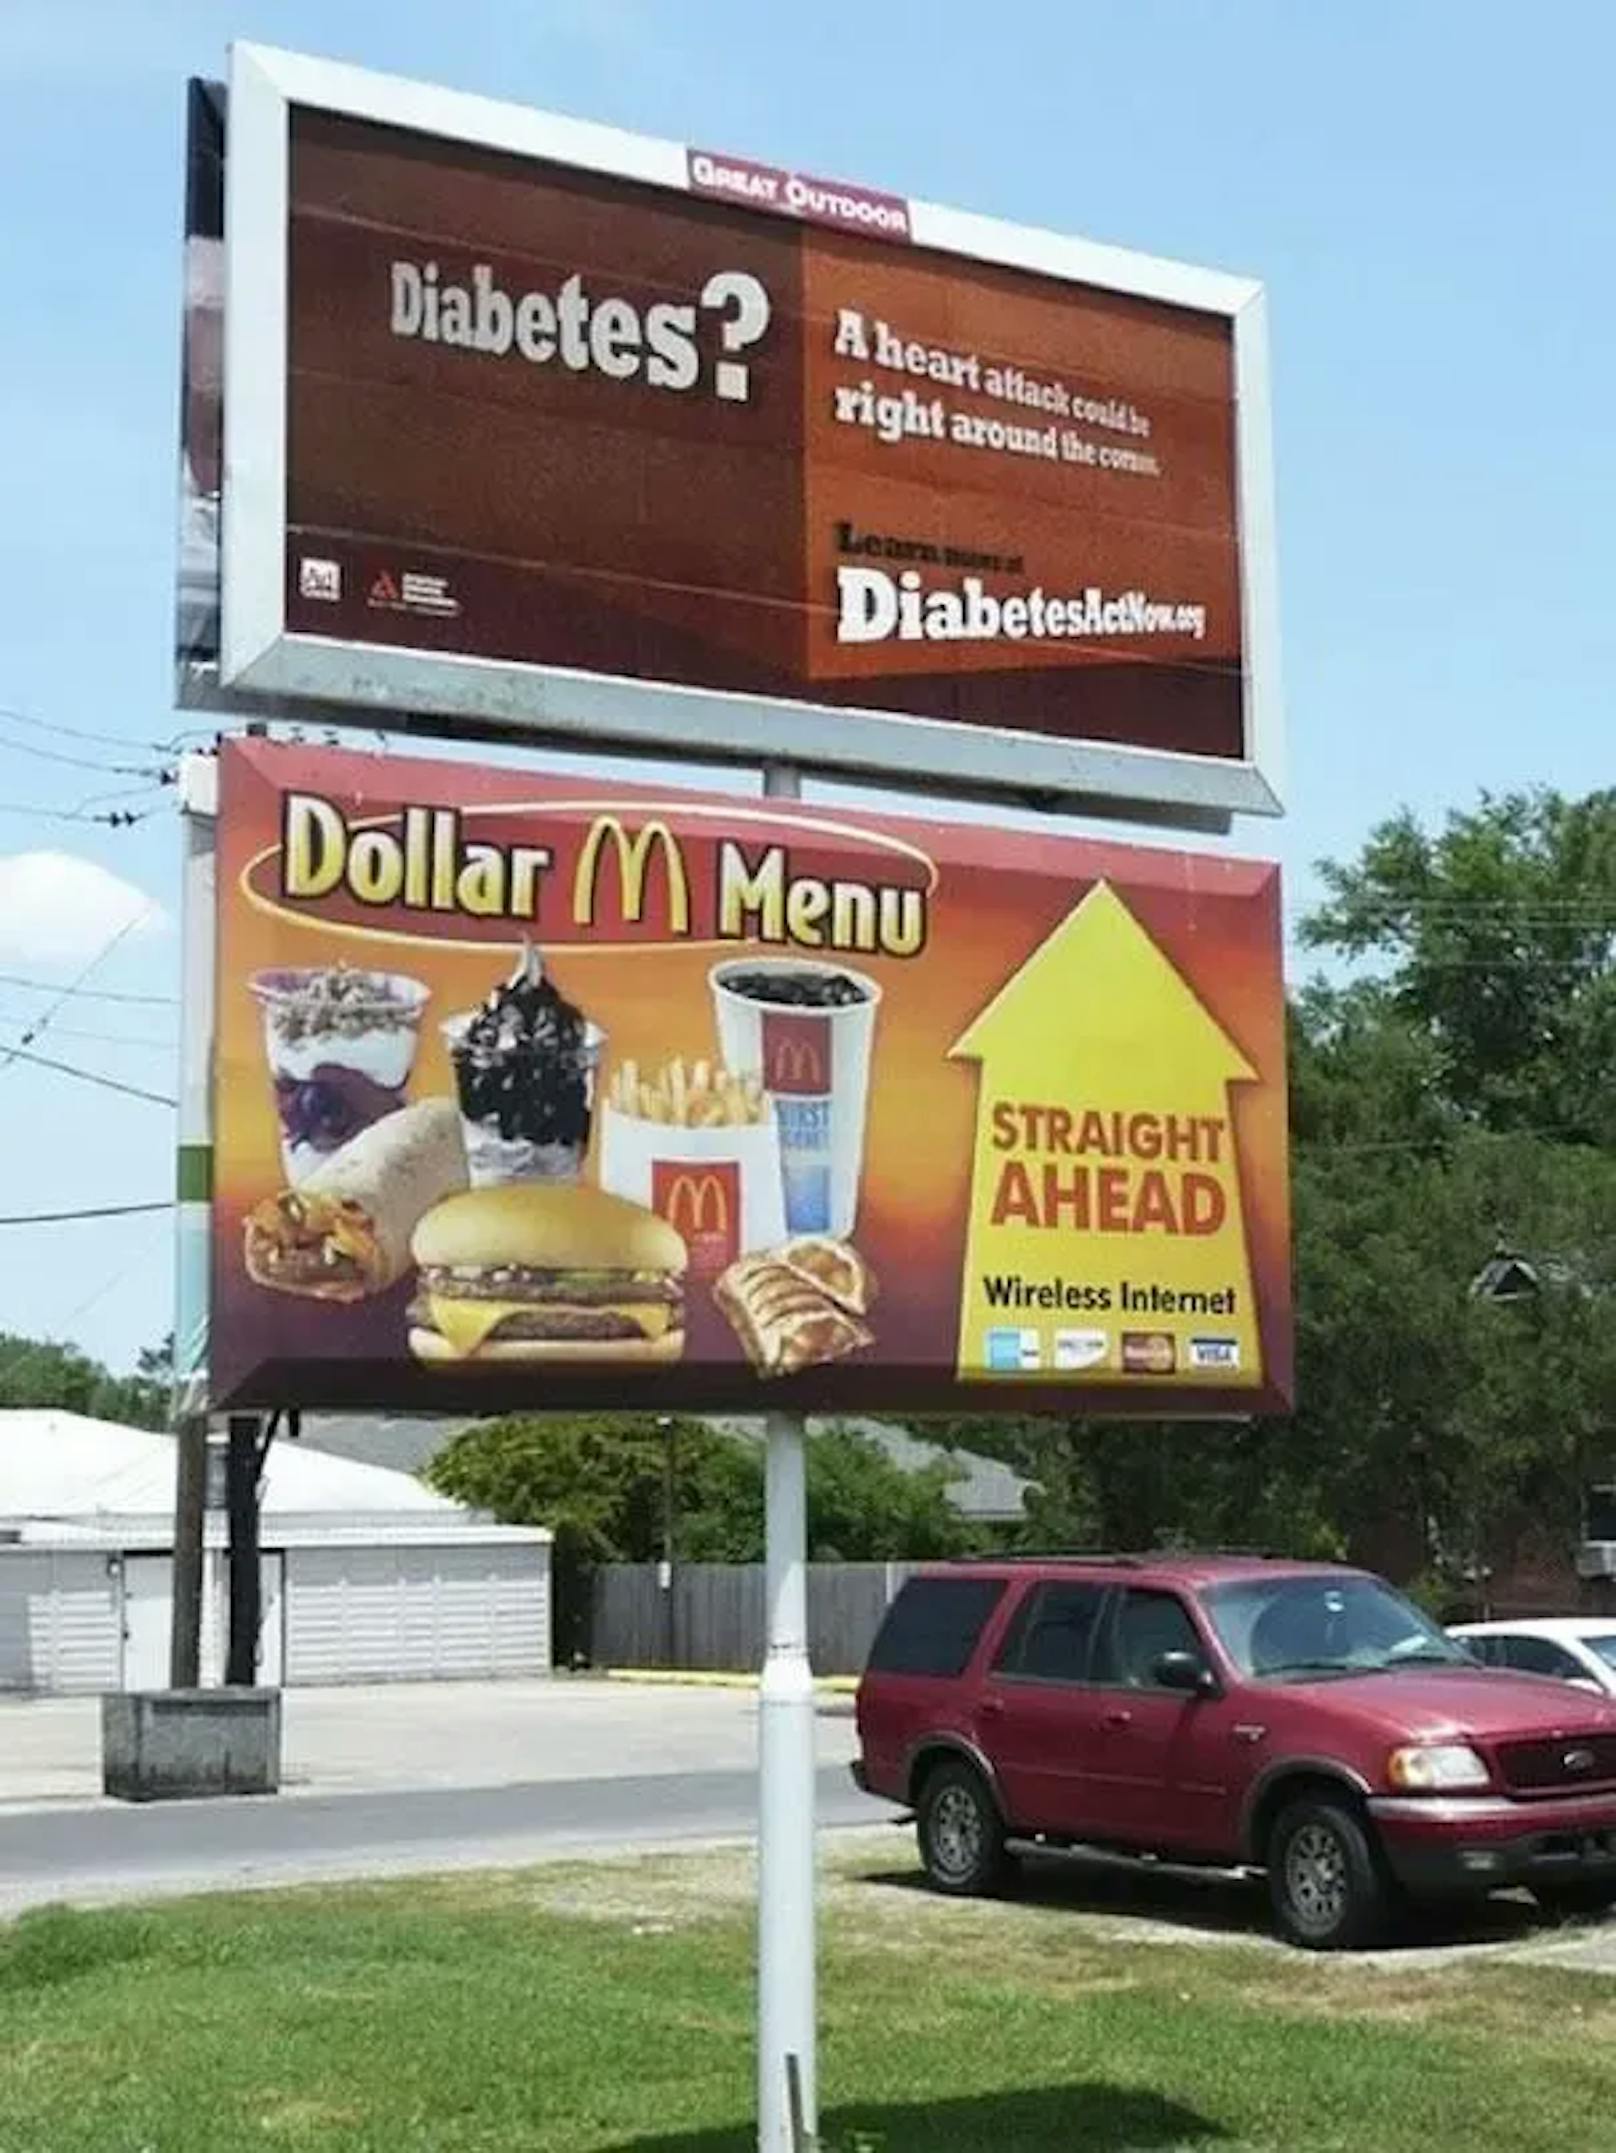 Diese Tafel, die ein besonders günstiges Fast-Food-Menü bewirbt, scheint direkt auf die Diabetes-Werbung darüber zu zeigen.